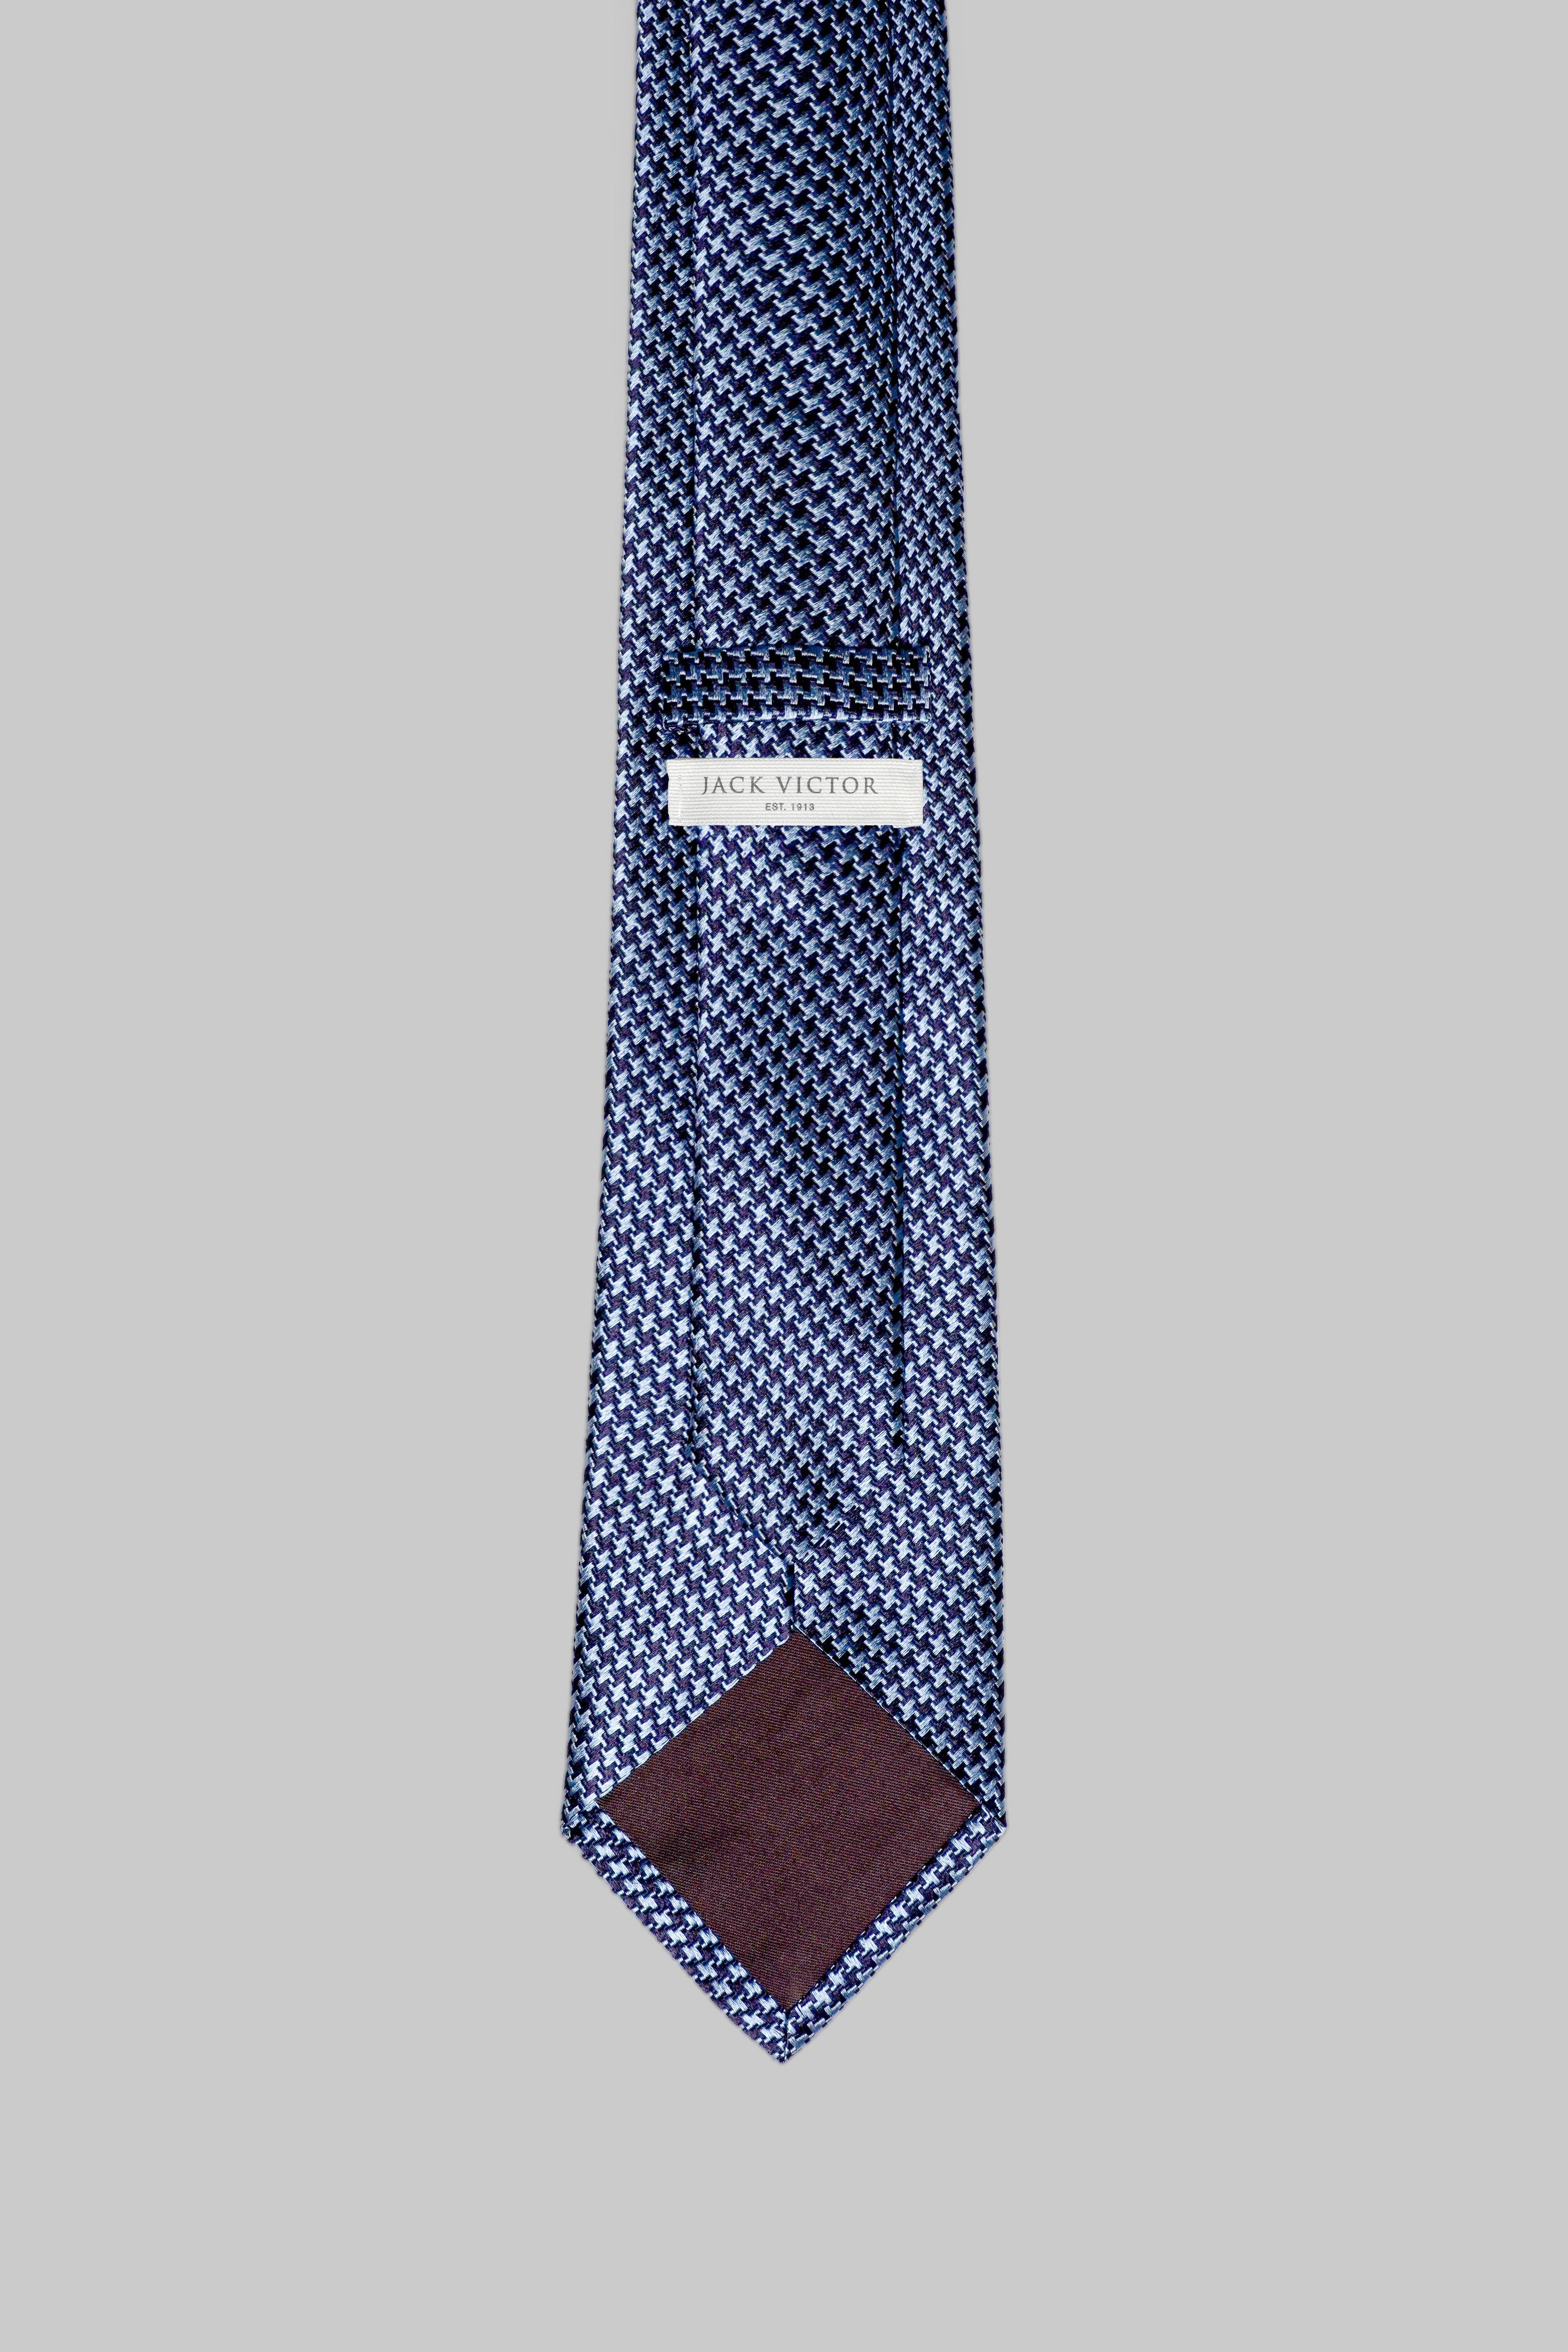 Vue alternative 2 Forden cravate pied-de-poule en bleu